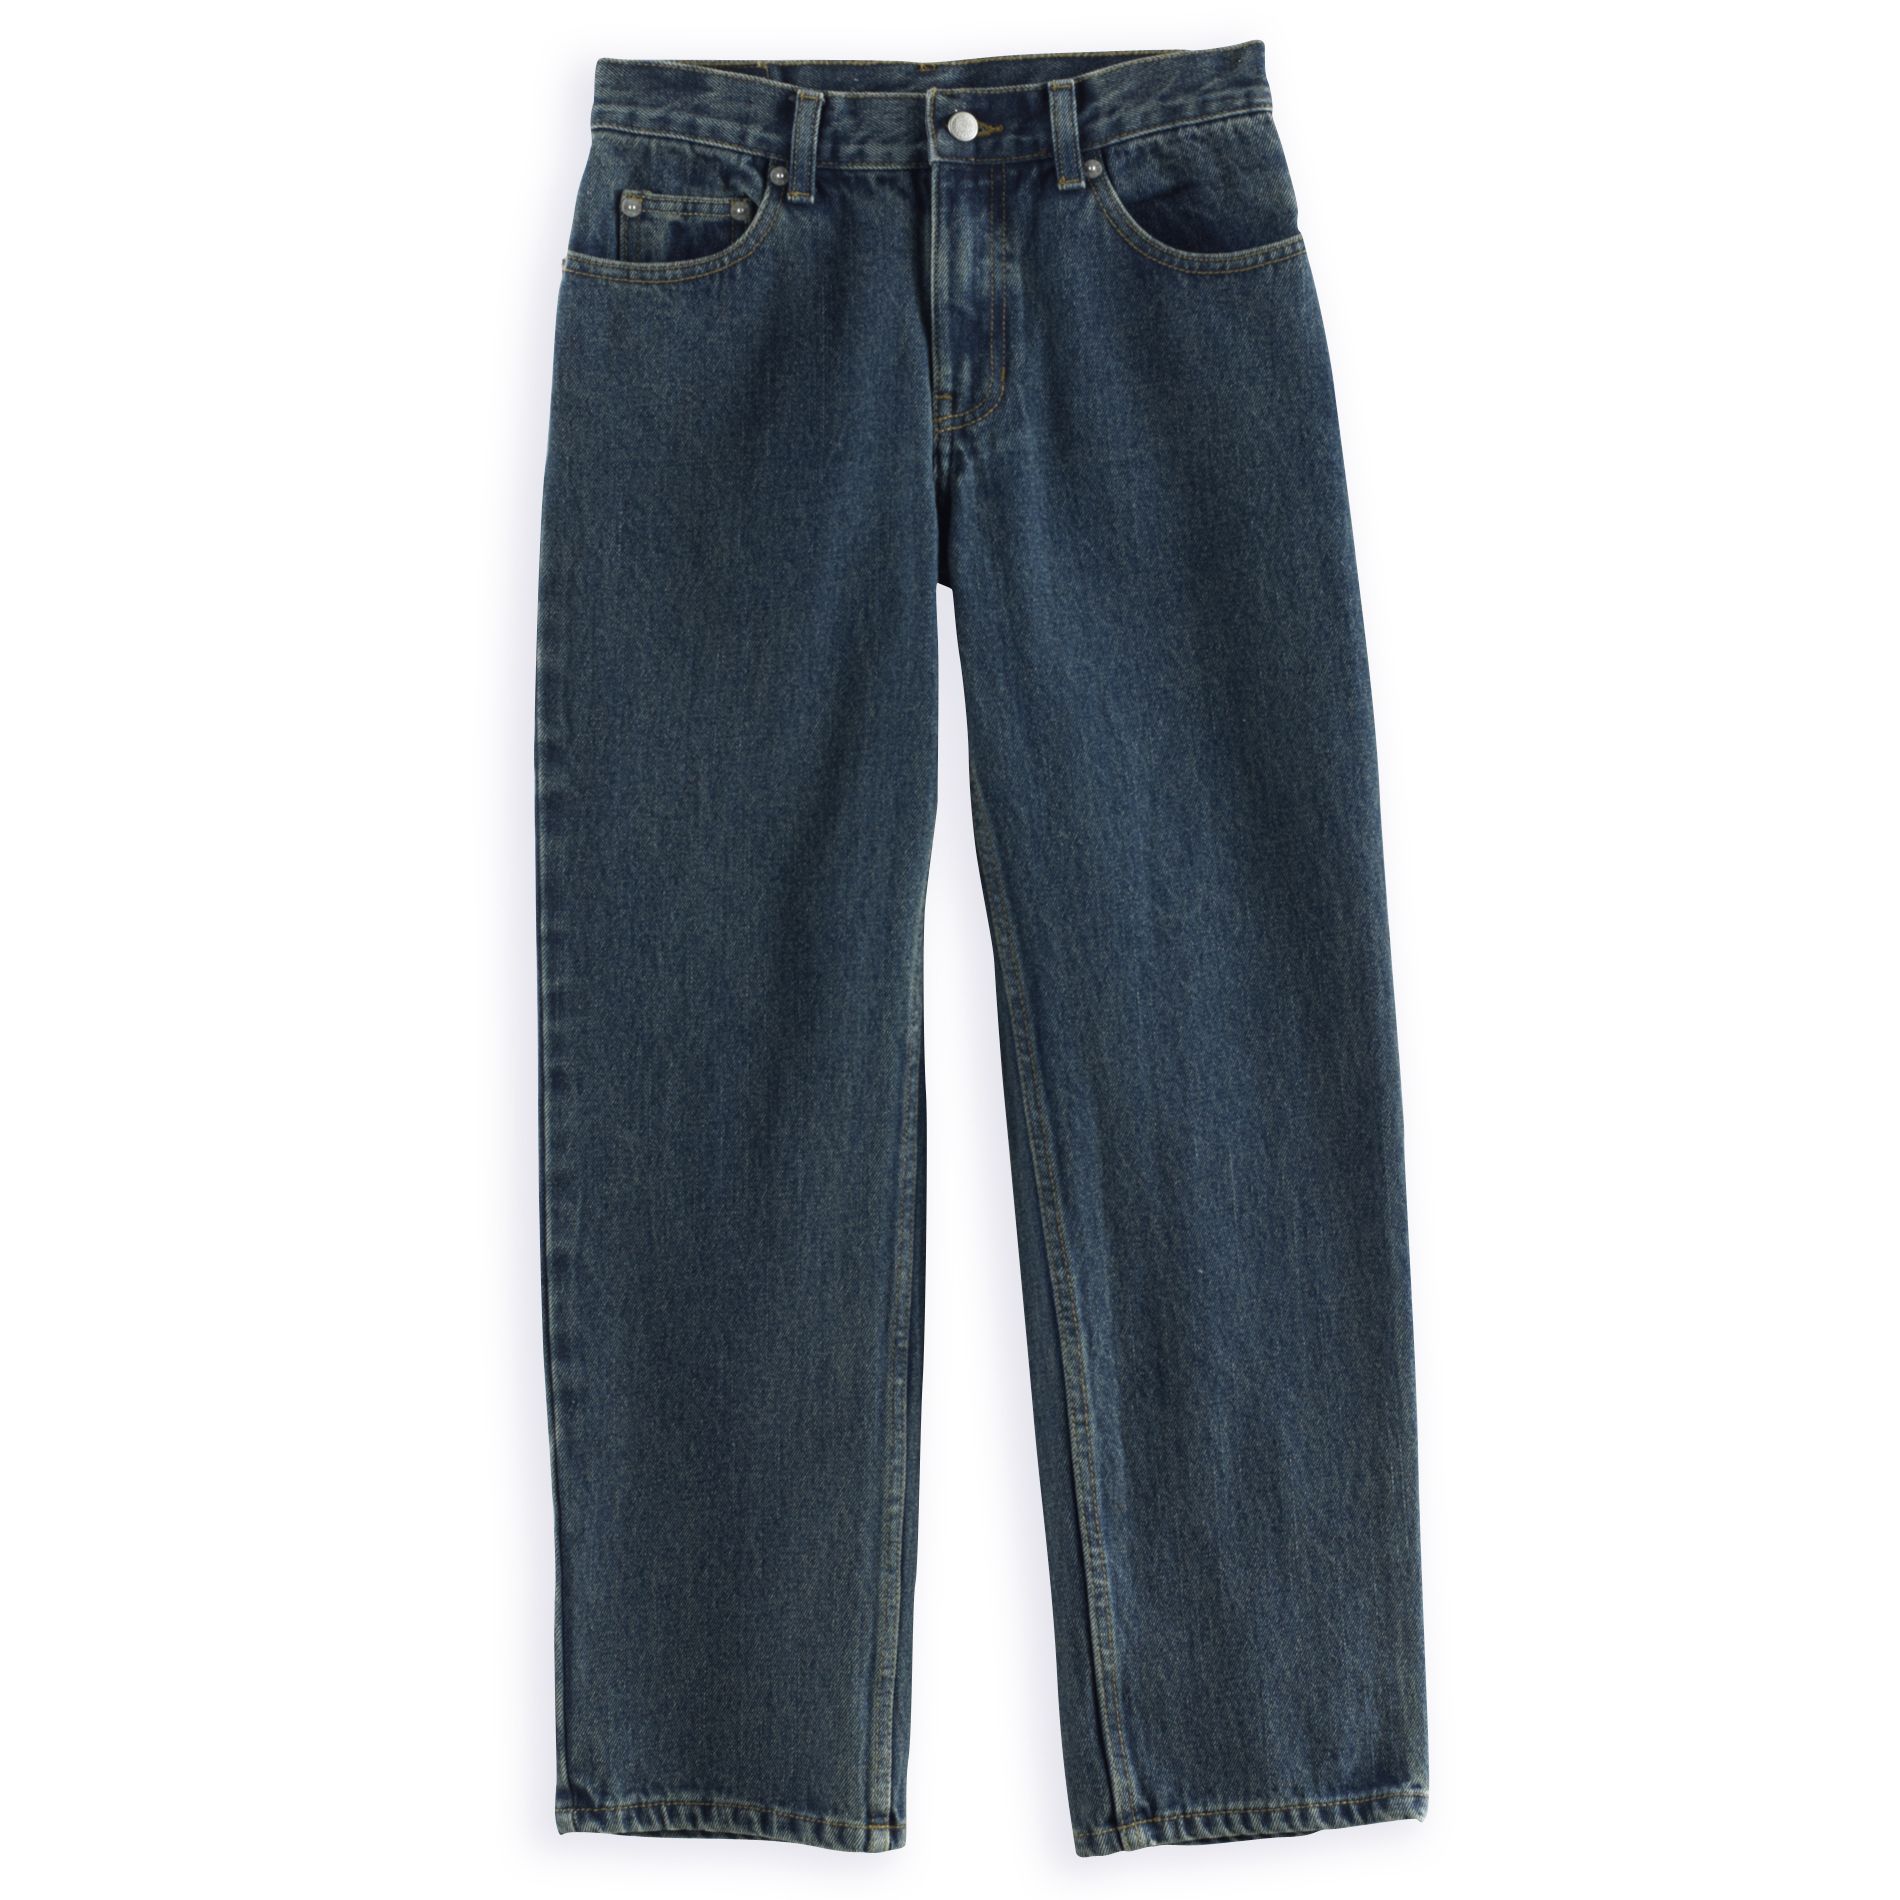 Canyon River Blues Boy's Slim 5-Pocket Jean